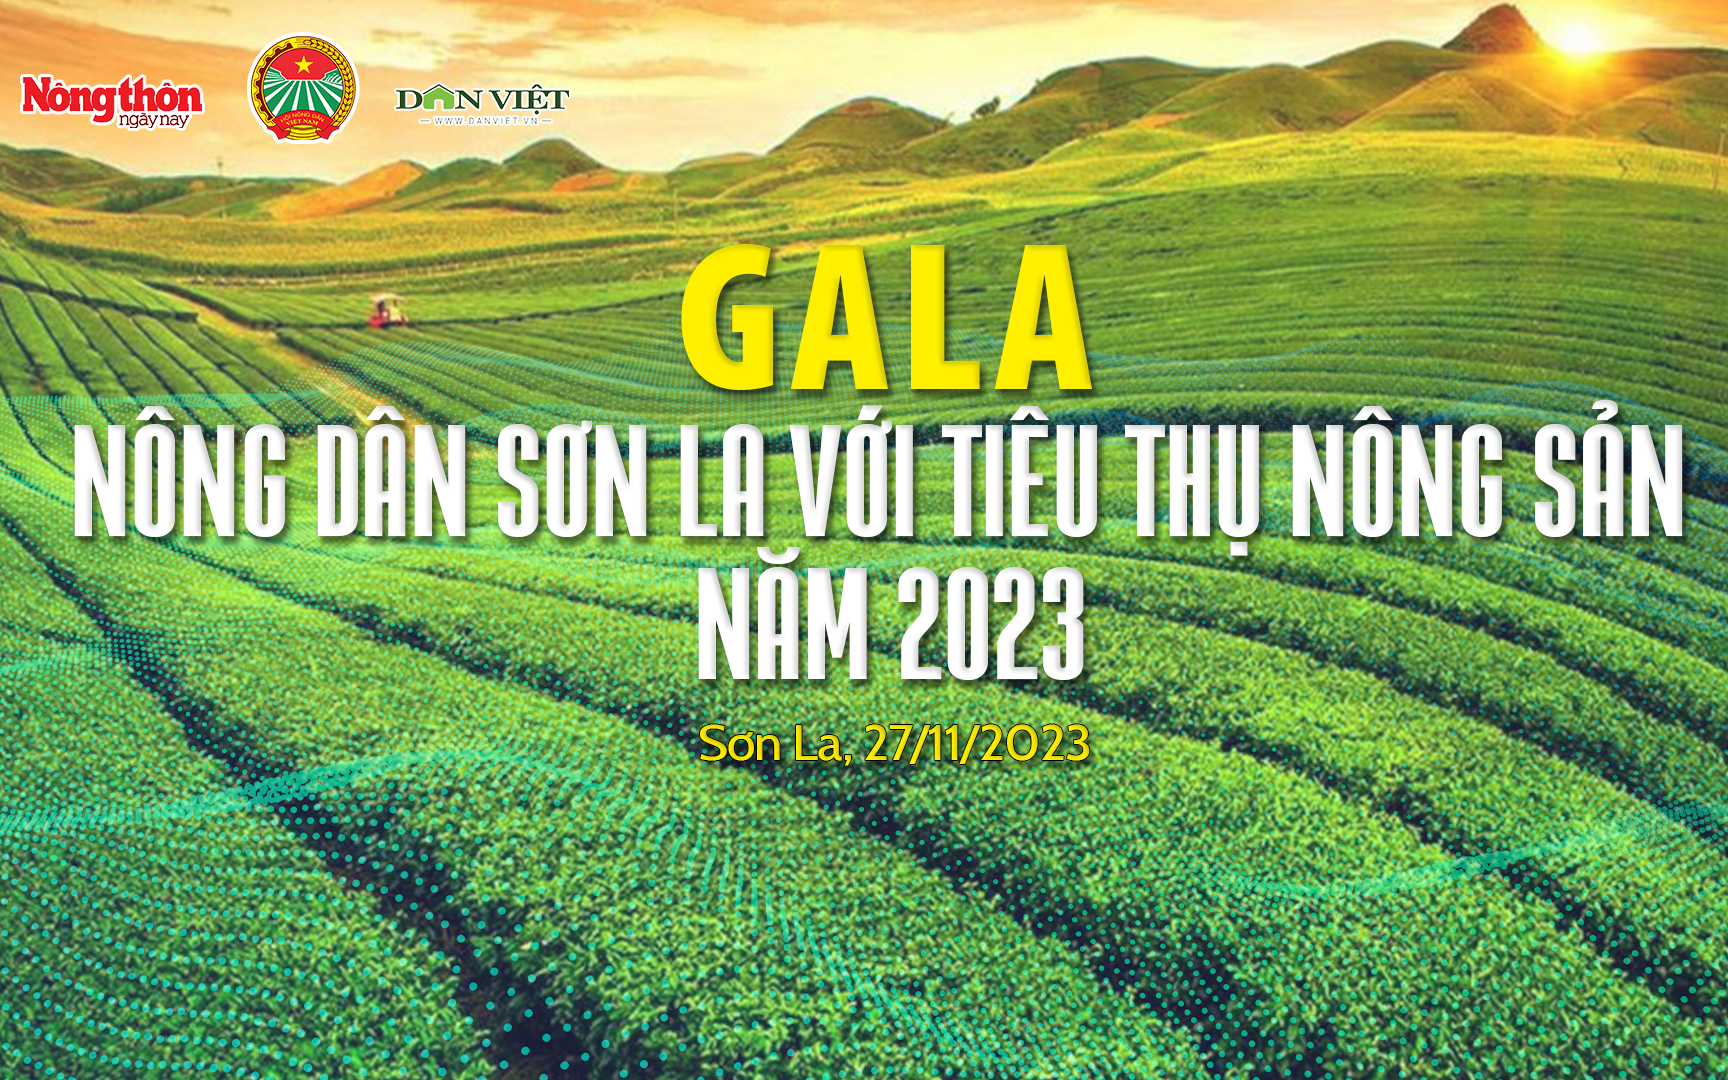 [TRỰC TIẾP] Nông dân Sơn La với tiêu thụ nông sản năm 2023: Những giải pháp từ thực tiễn